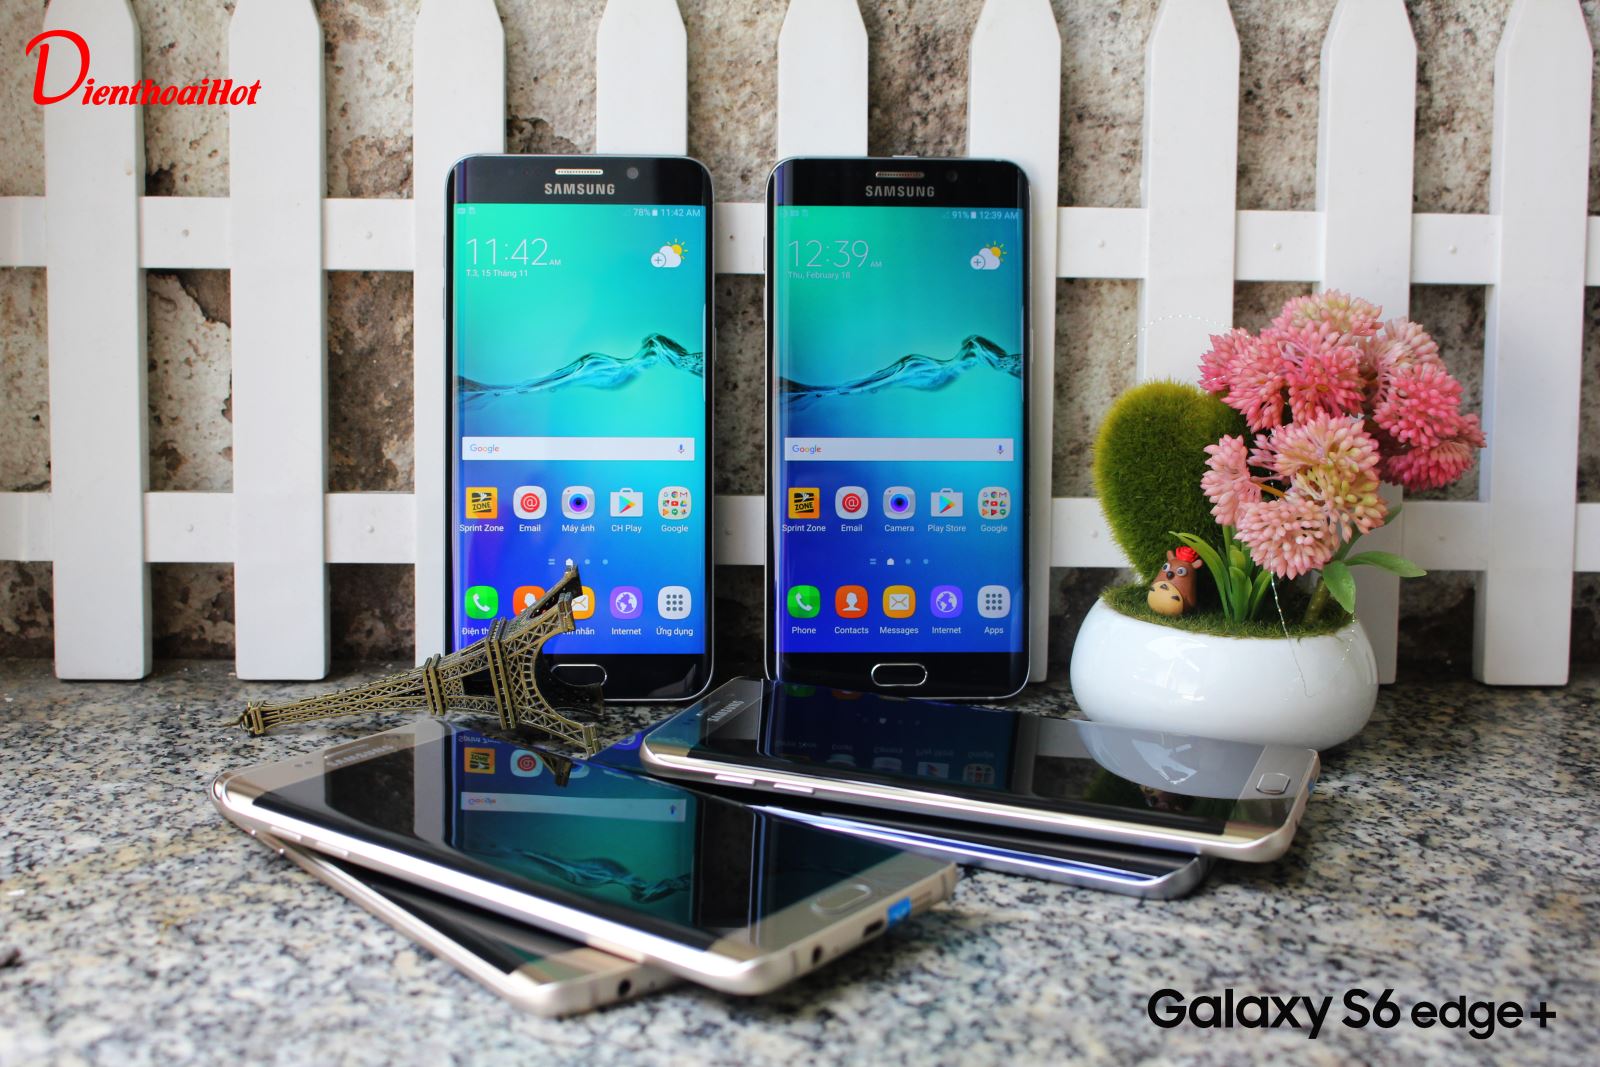 Samsung Galaxy S6 Edge Plus Cũ đẹp như mới tại Dienthoaihot